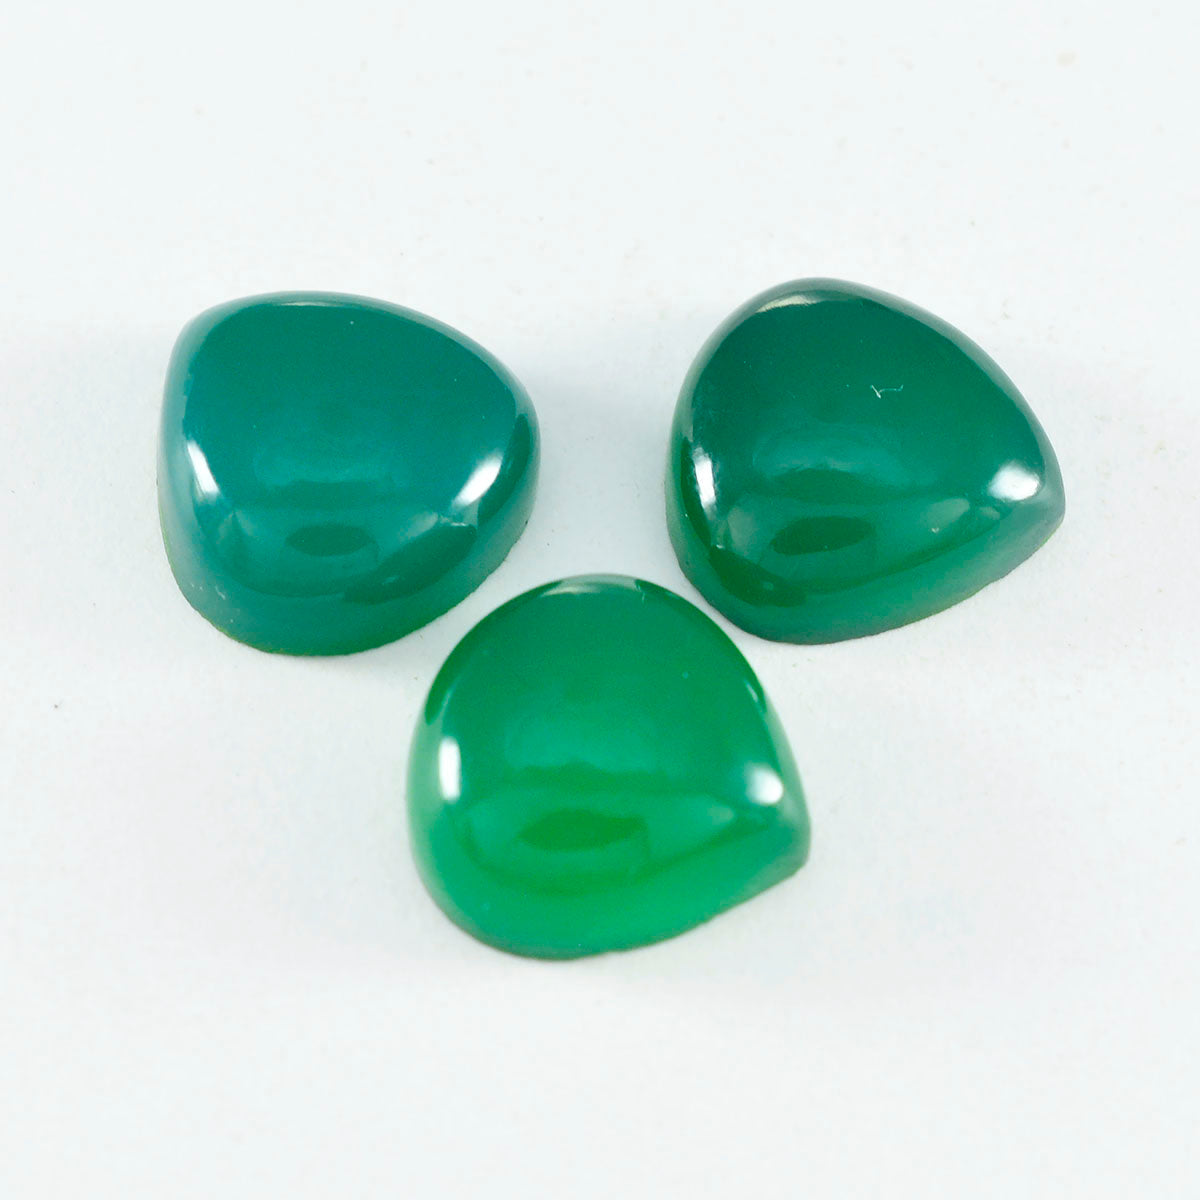 Riyogems 1pc cabochon onyx vert 15x15mm forme de coeur beauté qualité pierre précieuse en vrac